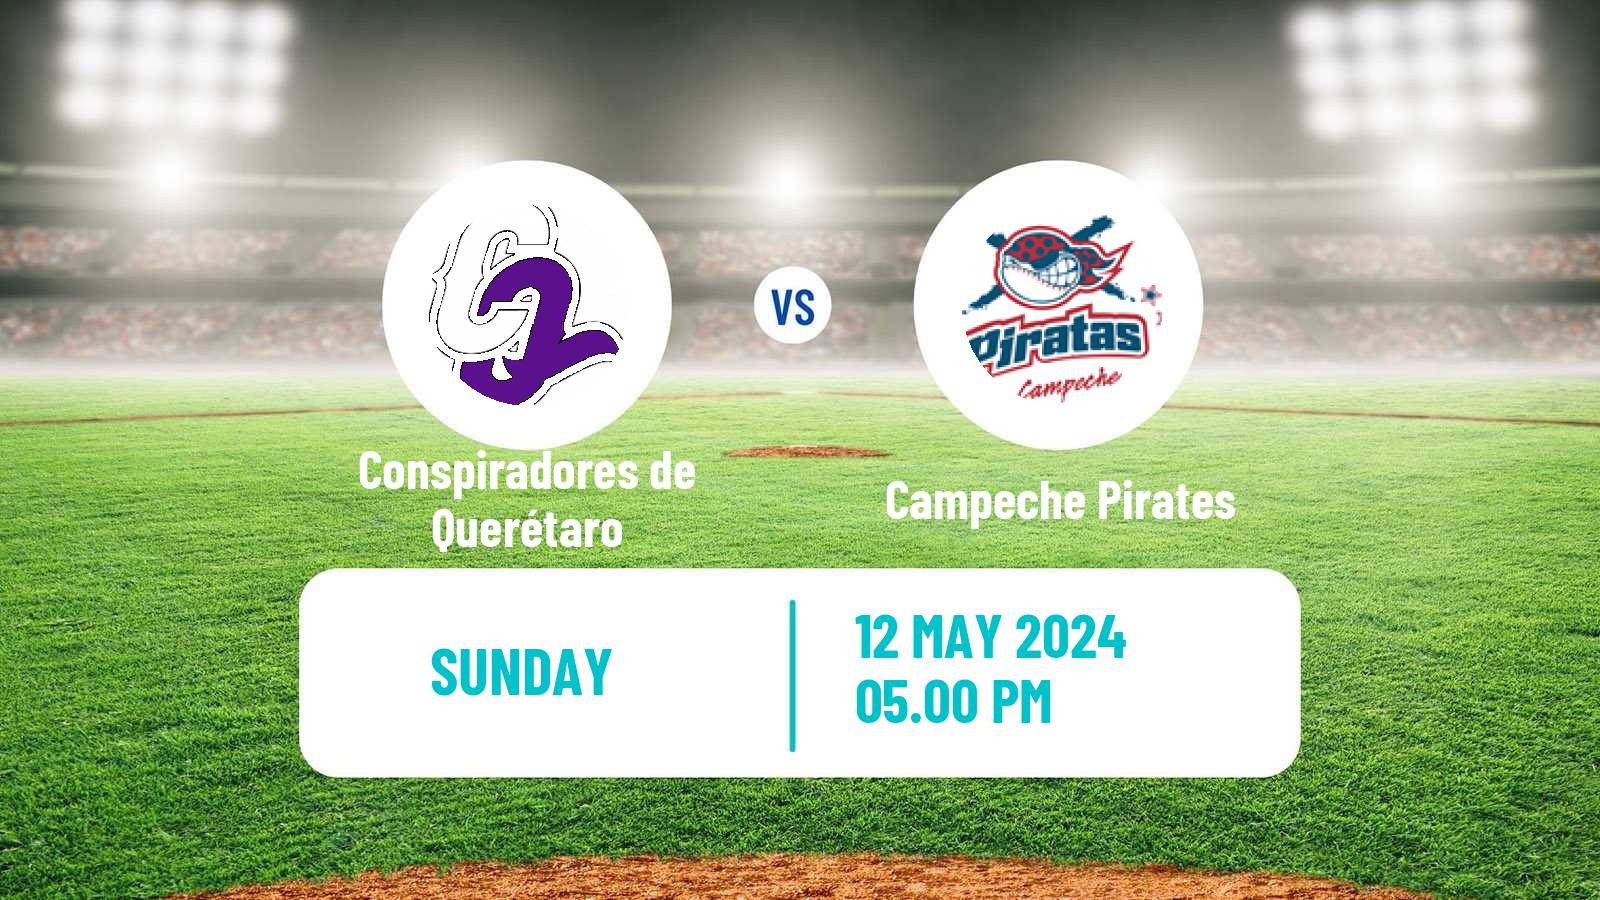 Baseball LMB Conspiradores de Querétaro - Campeche Pirates